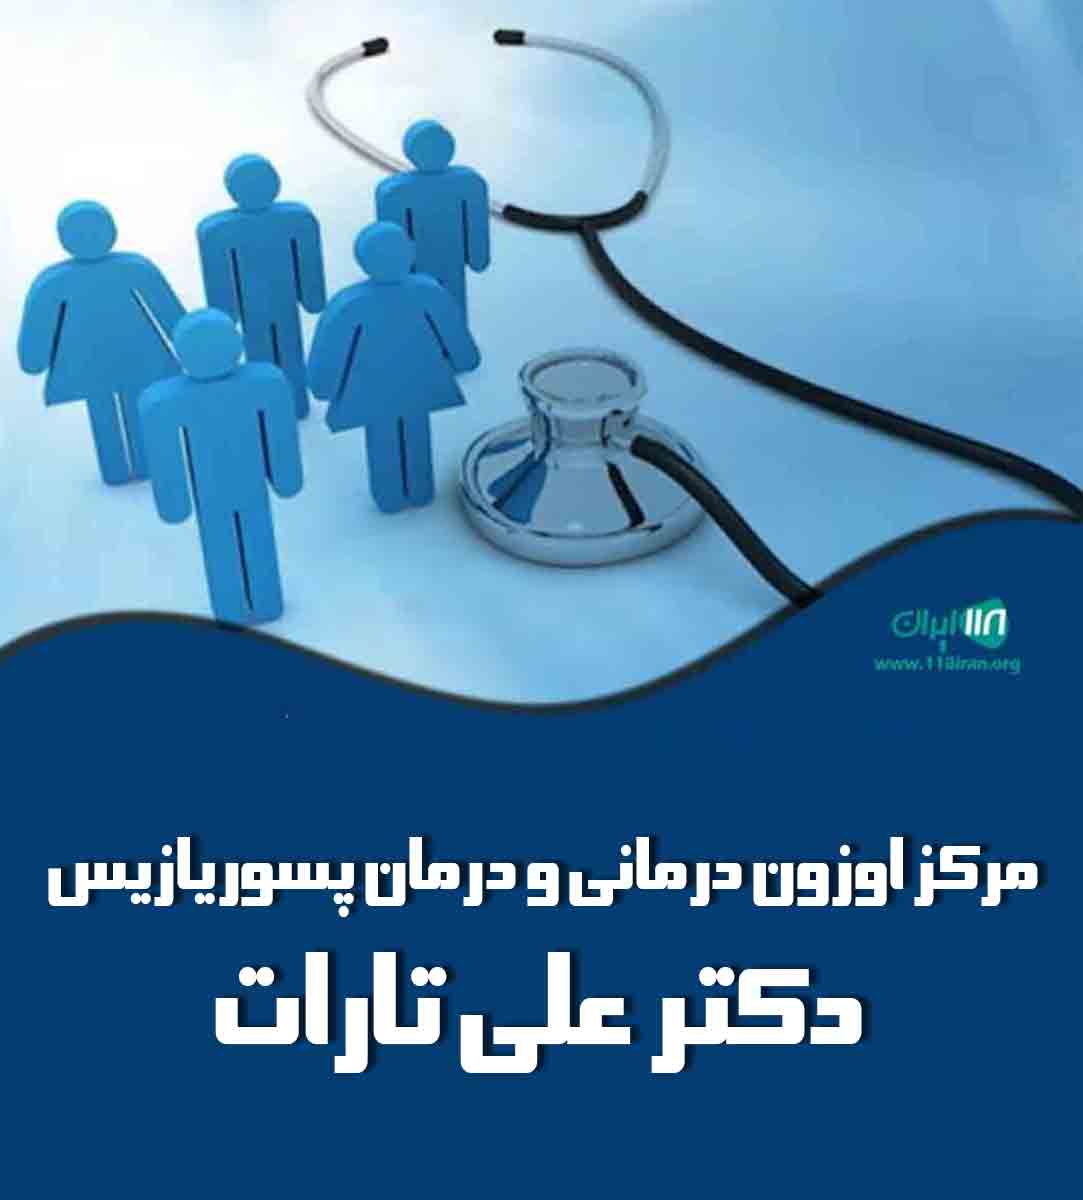 مرکز اوزون درمانی و درمان پسوریازیس دکتر علی تارات در تهران